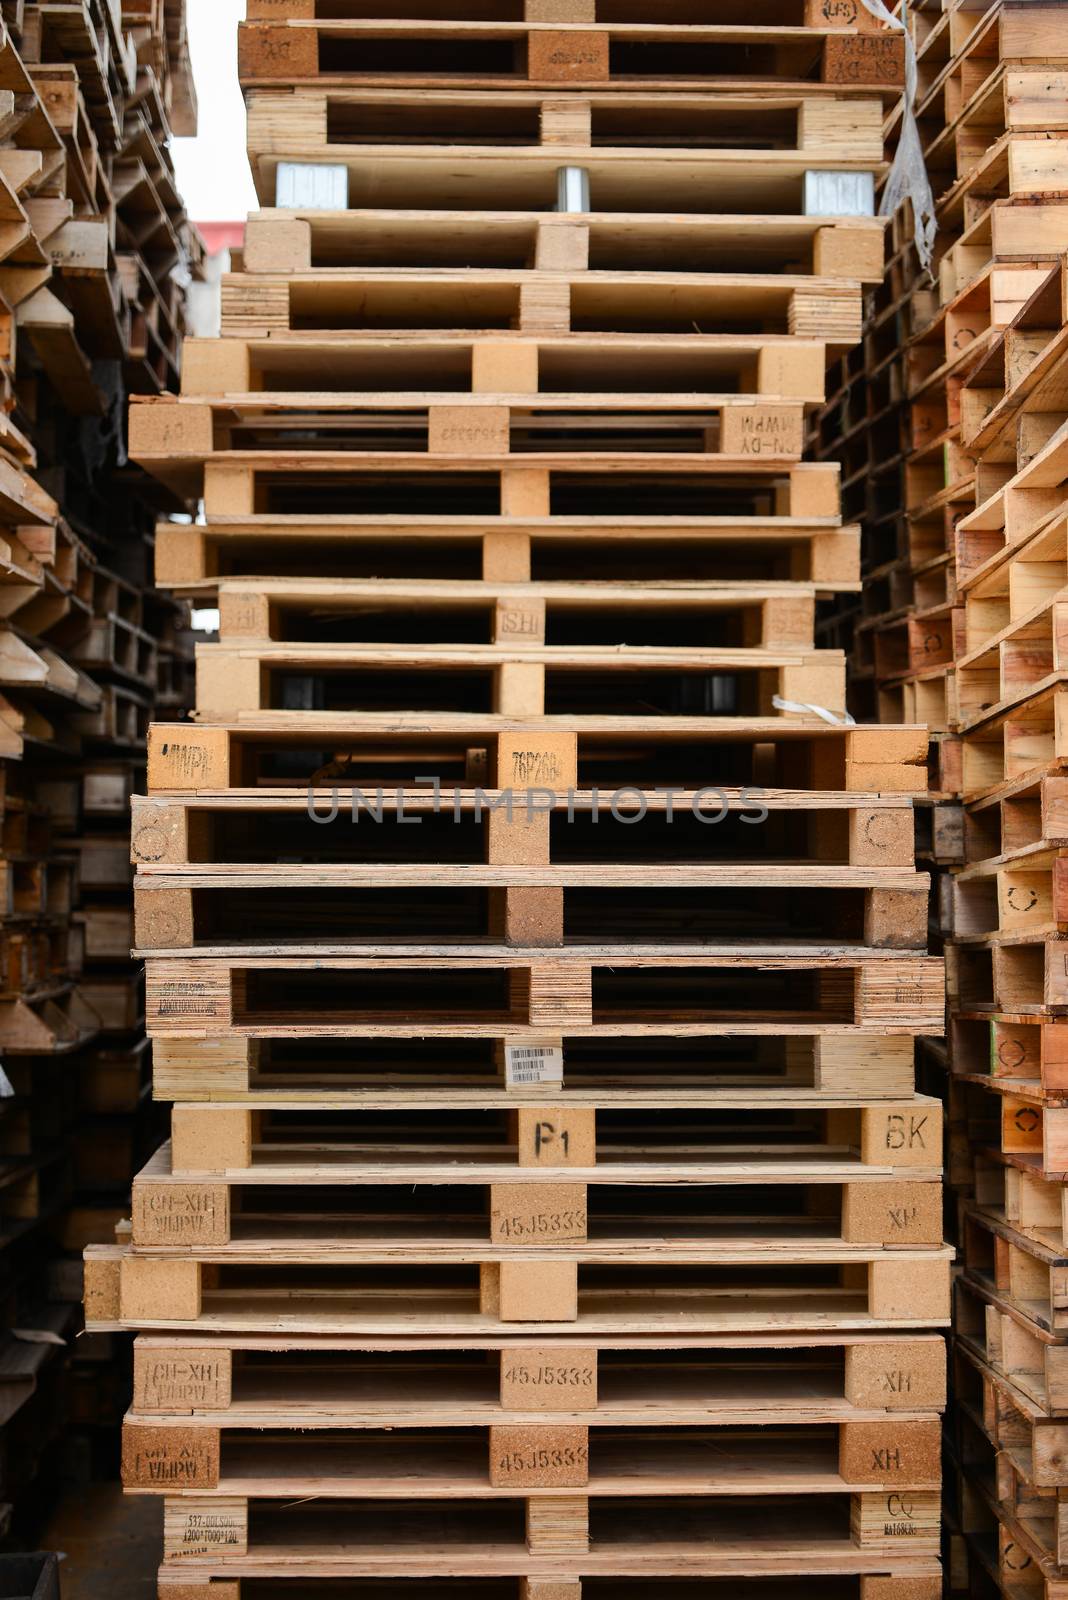 wood pallet stack by antpkr